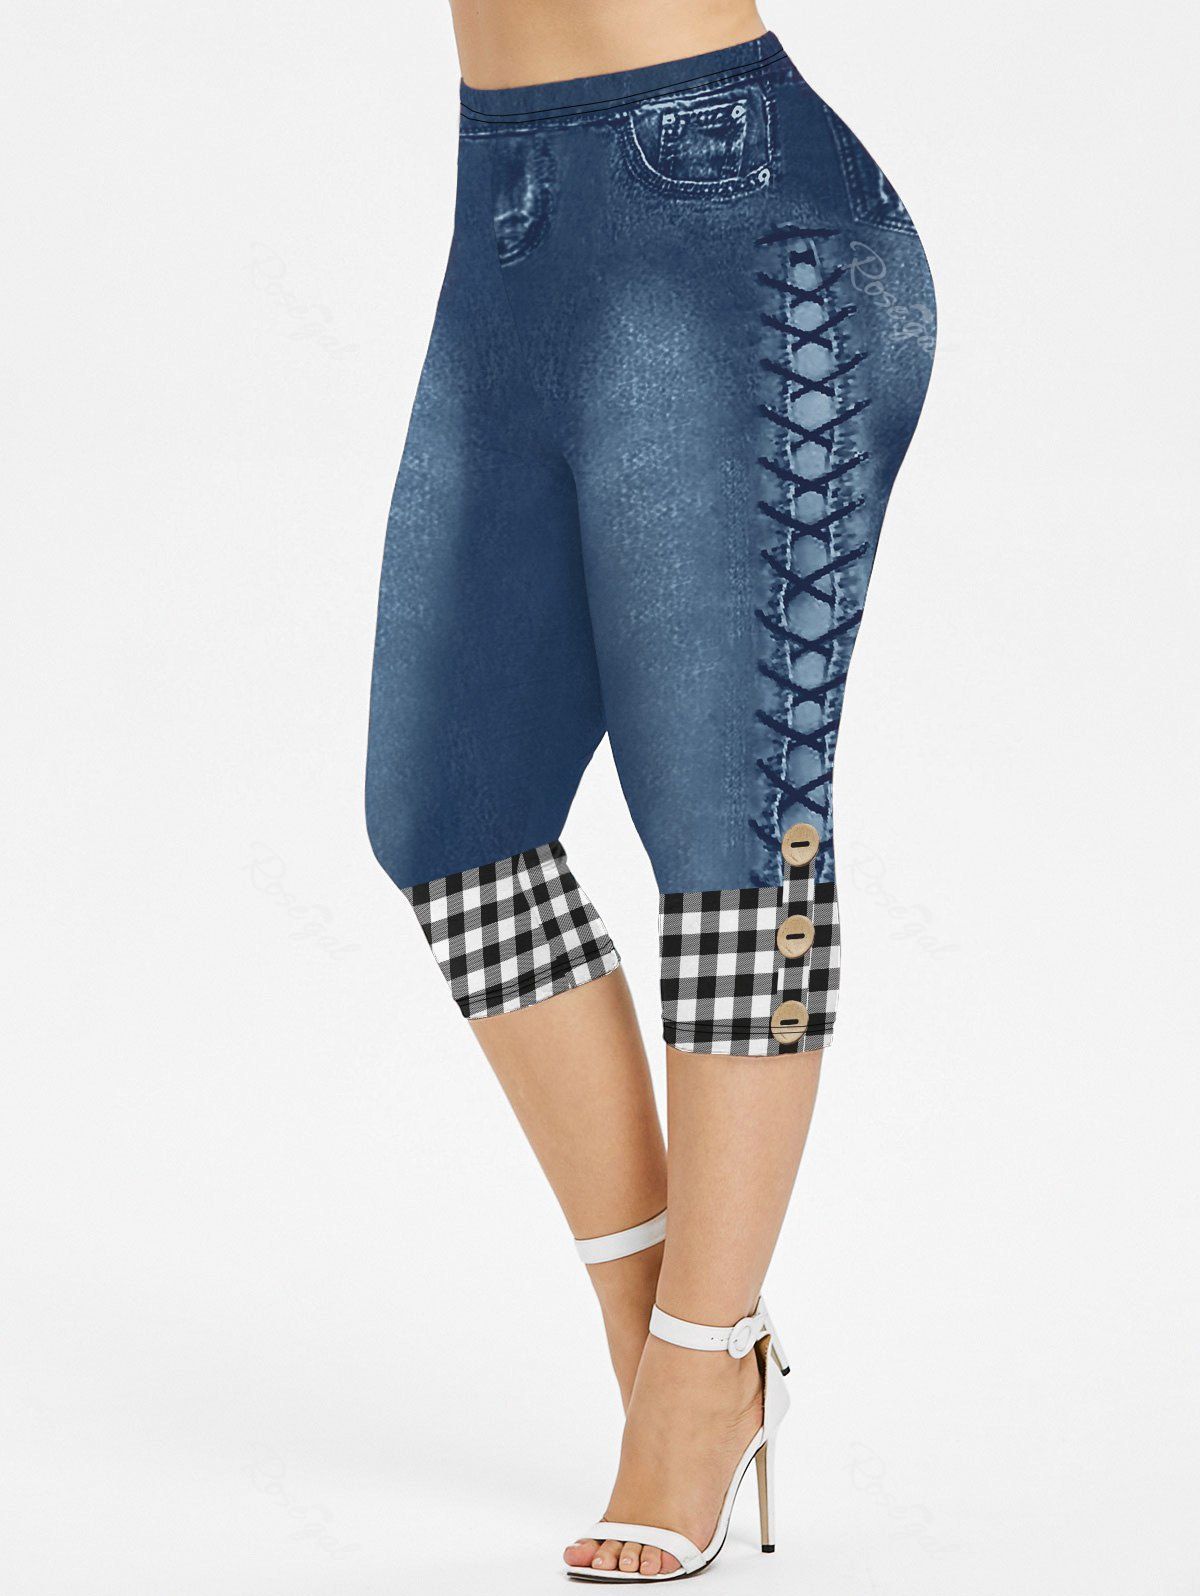 Buy Plus Size 3D Plaid Buttons Lace-up Jeans Printed Capri Jeggings  